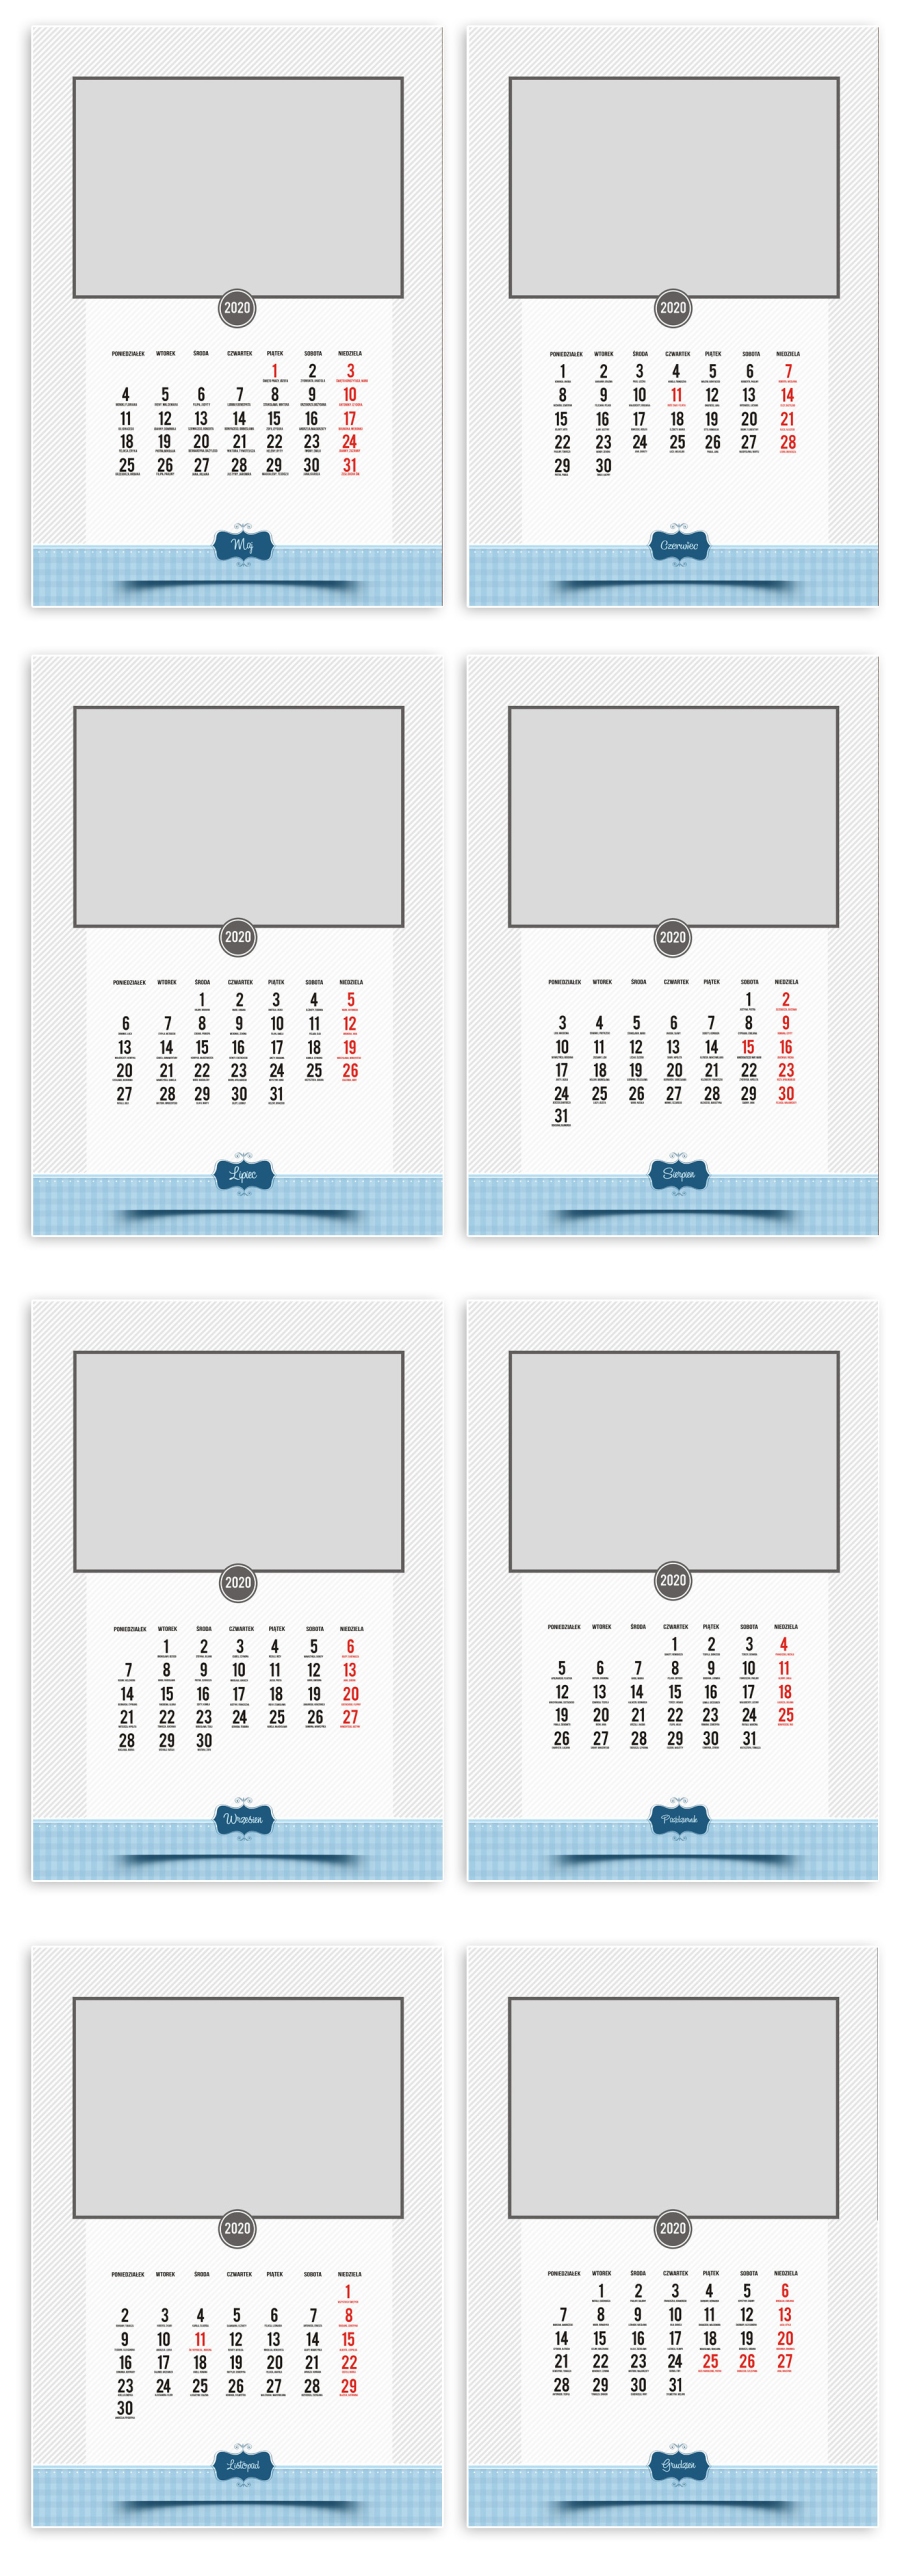 foto kalendarz A3 kalendarium 2020 szablony do projektowania kalendarza z własnych zdjęć